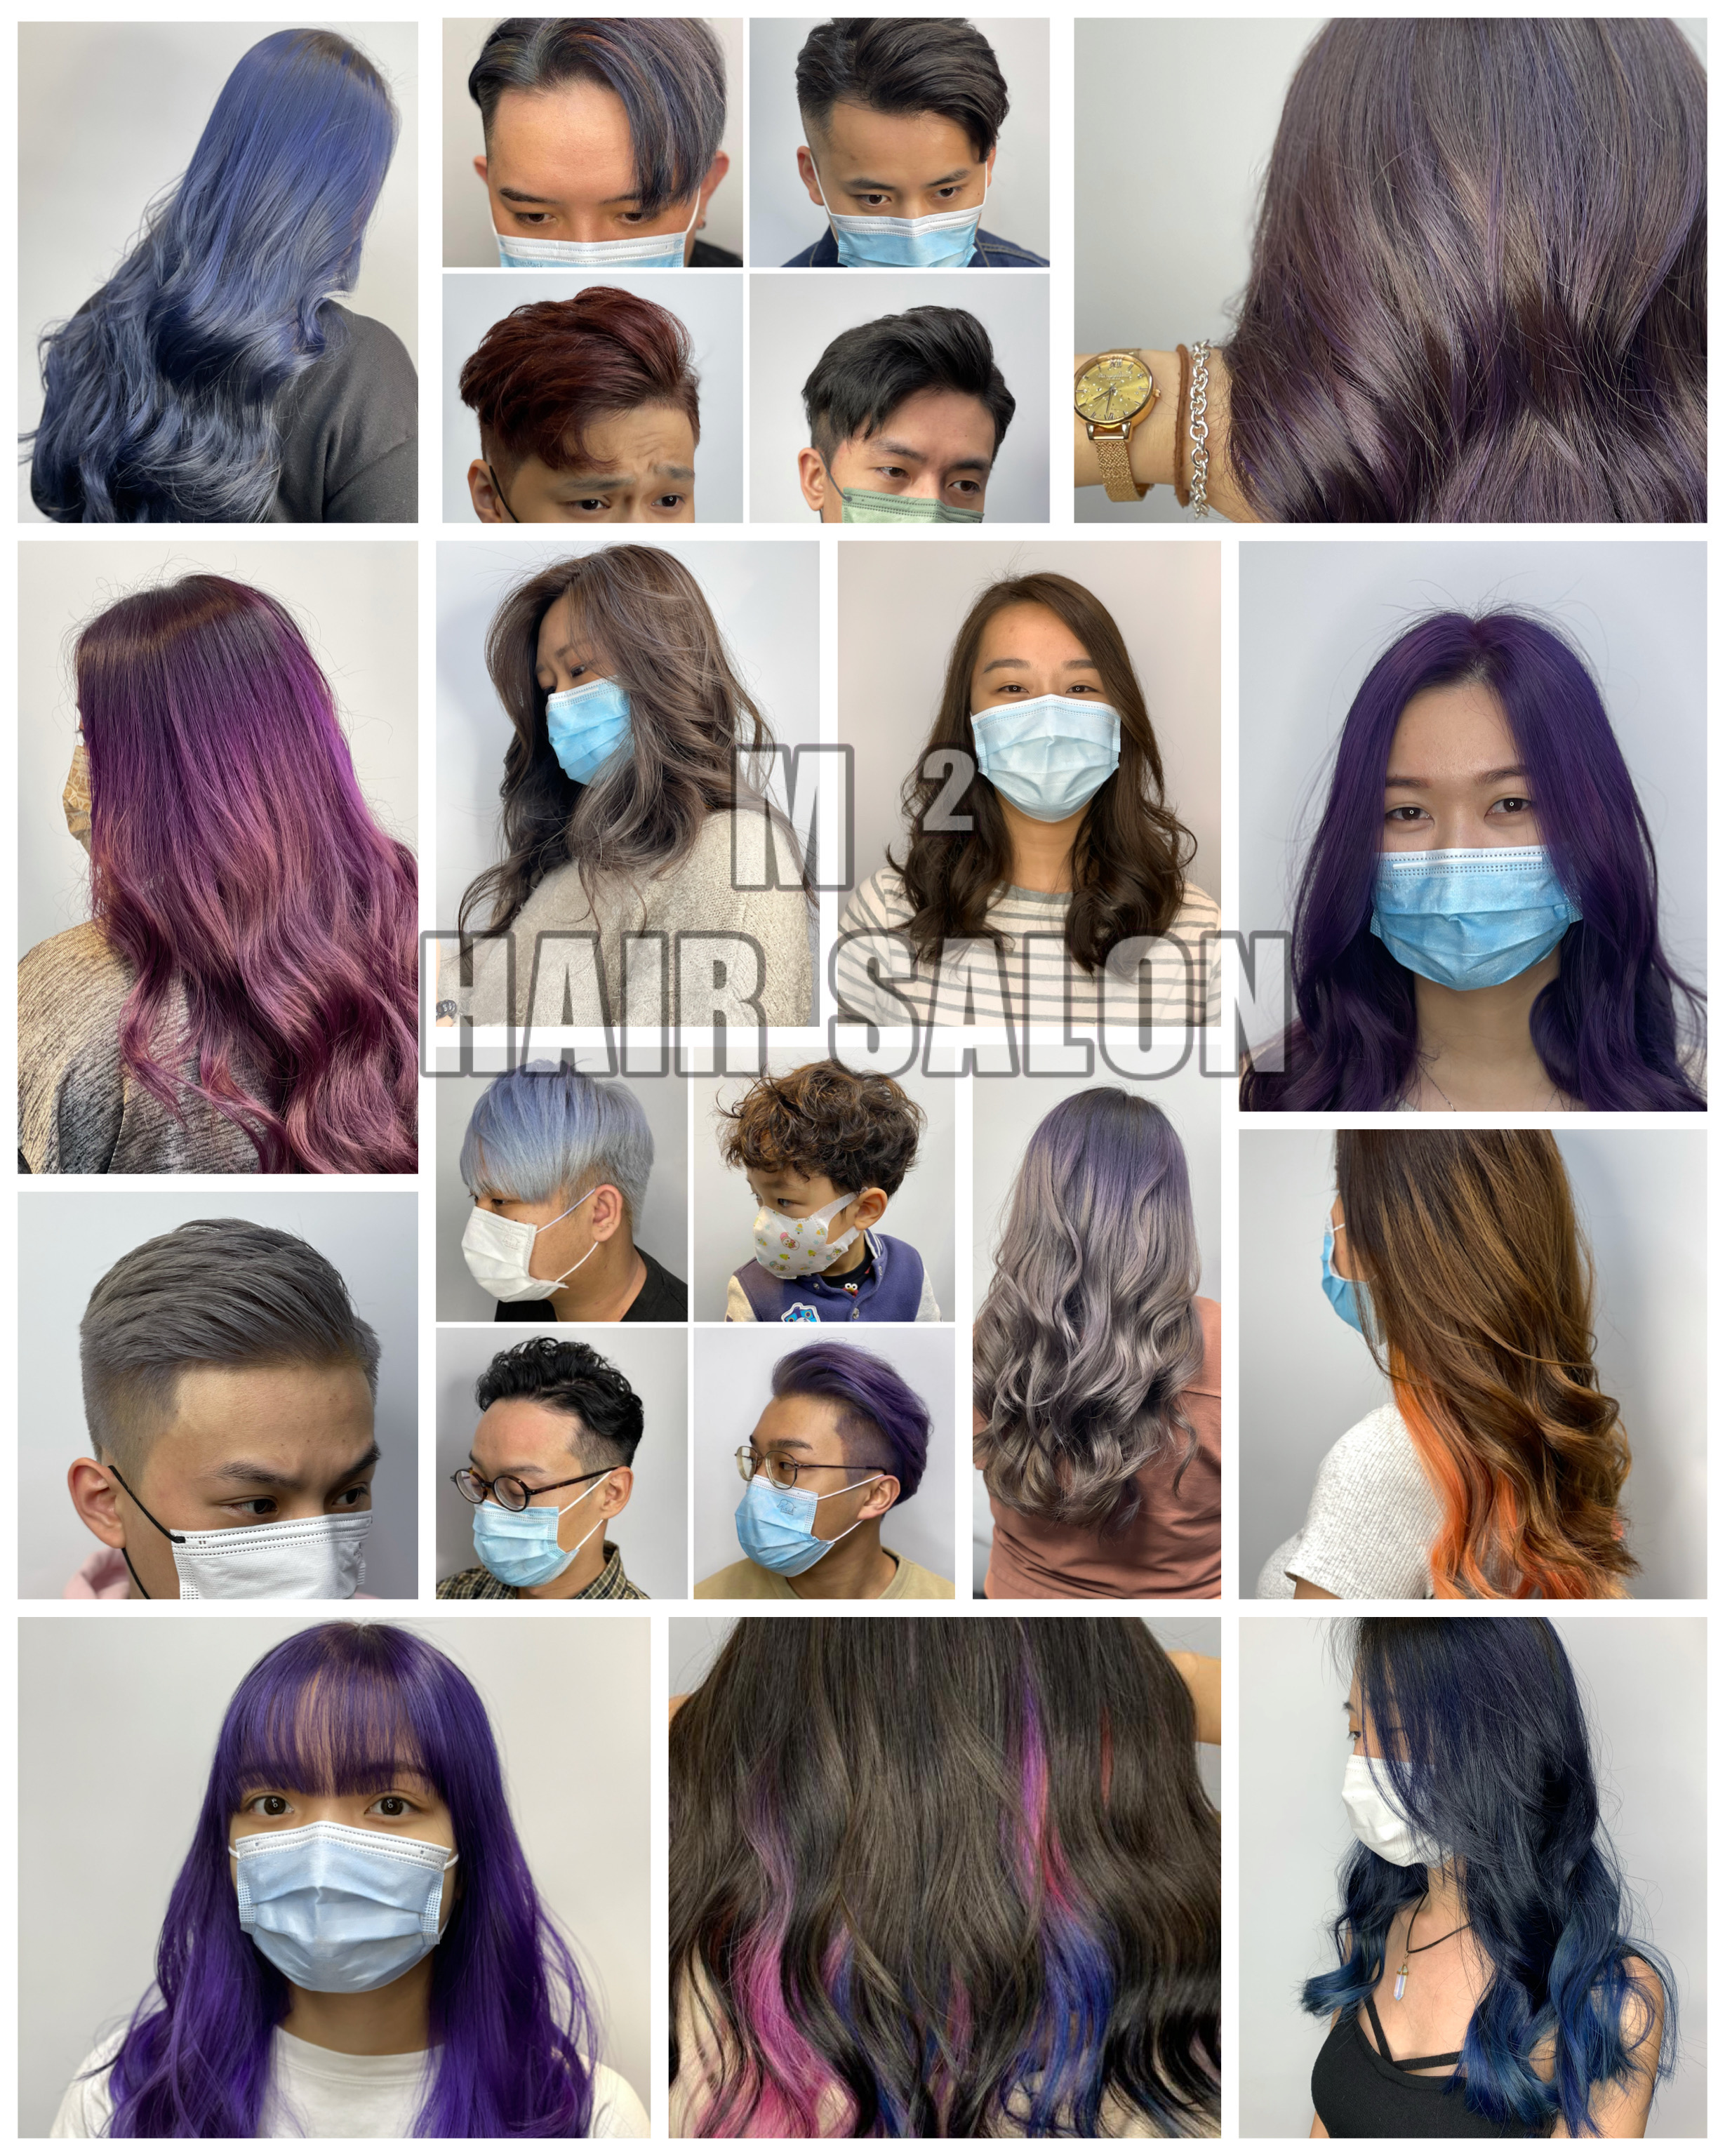 香港美髮網 HK Hair Salon 髮型屋Salon / 髮型師: M² Hair Salon